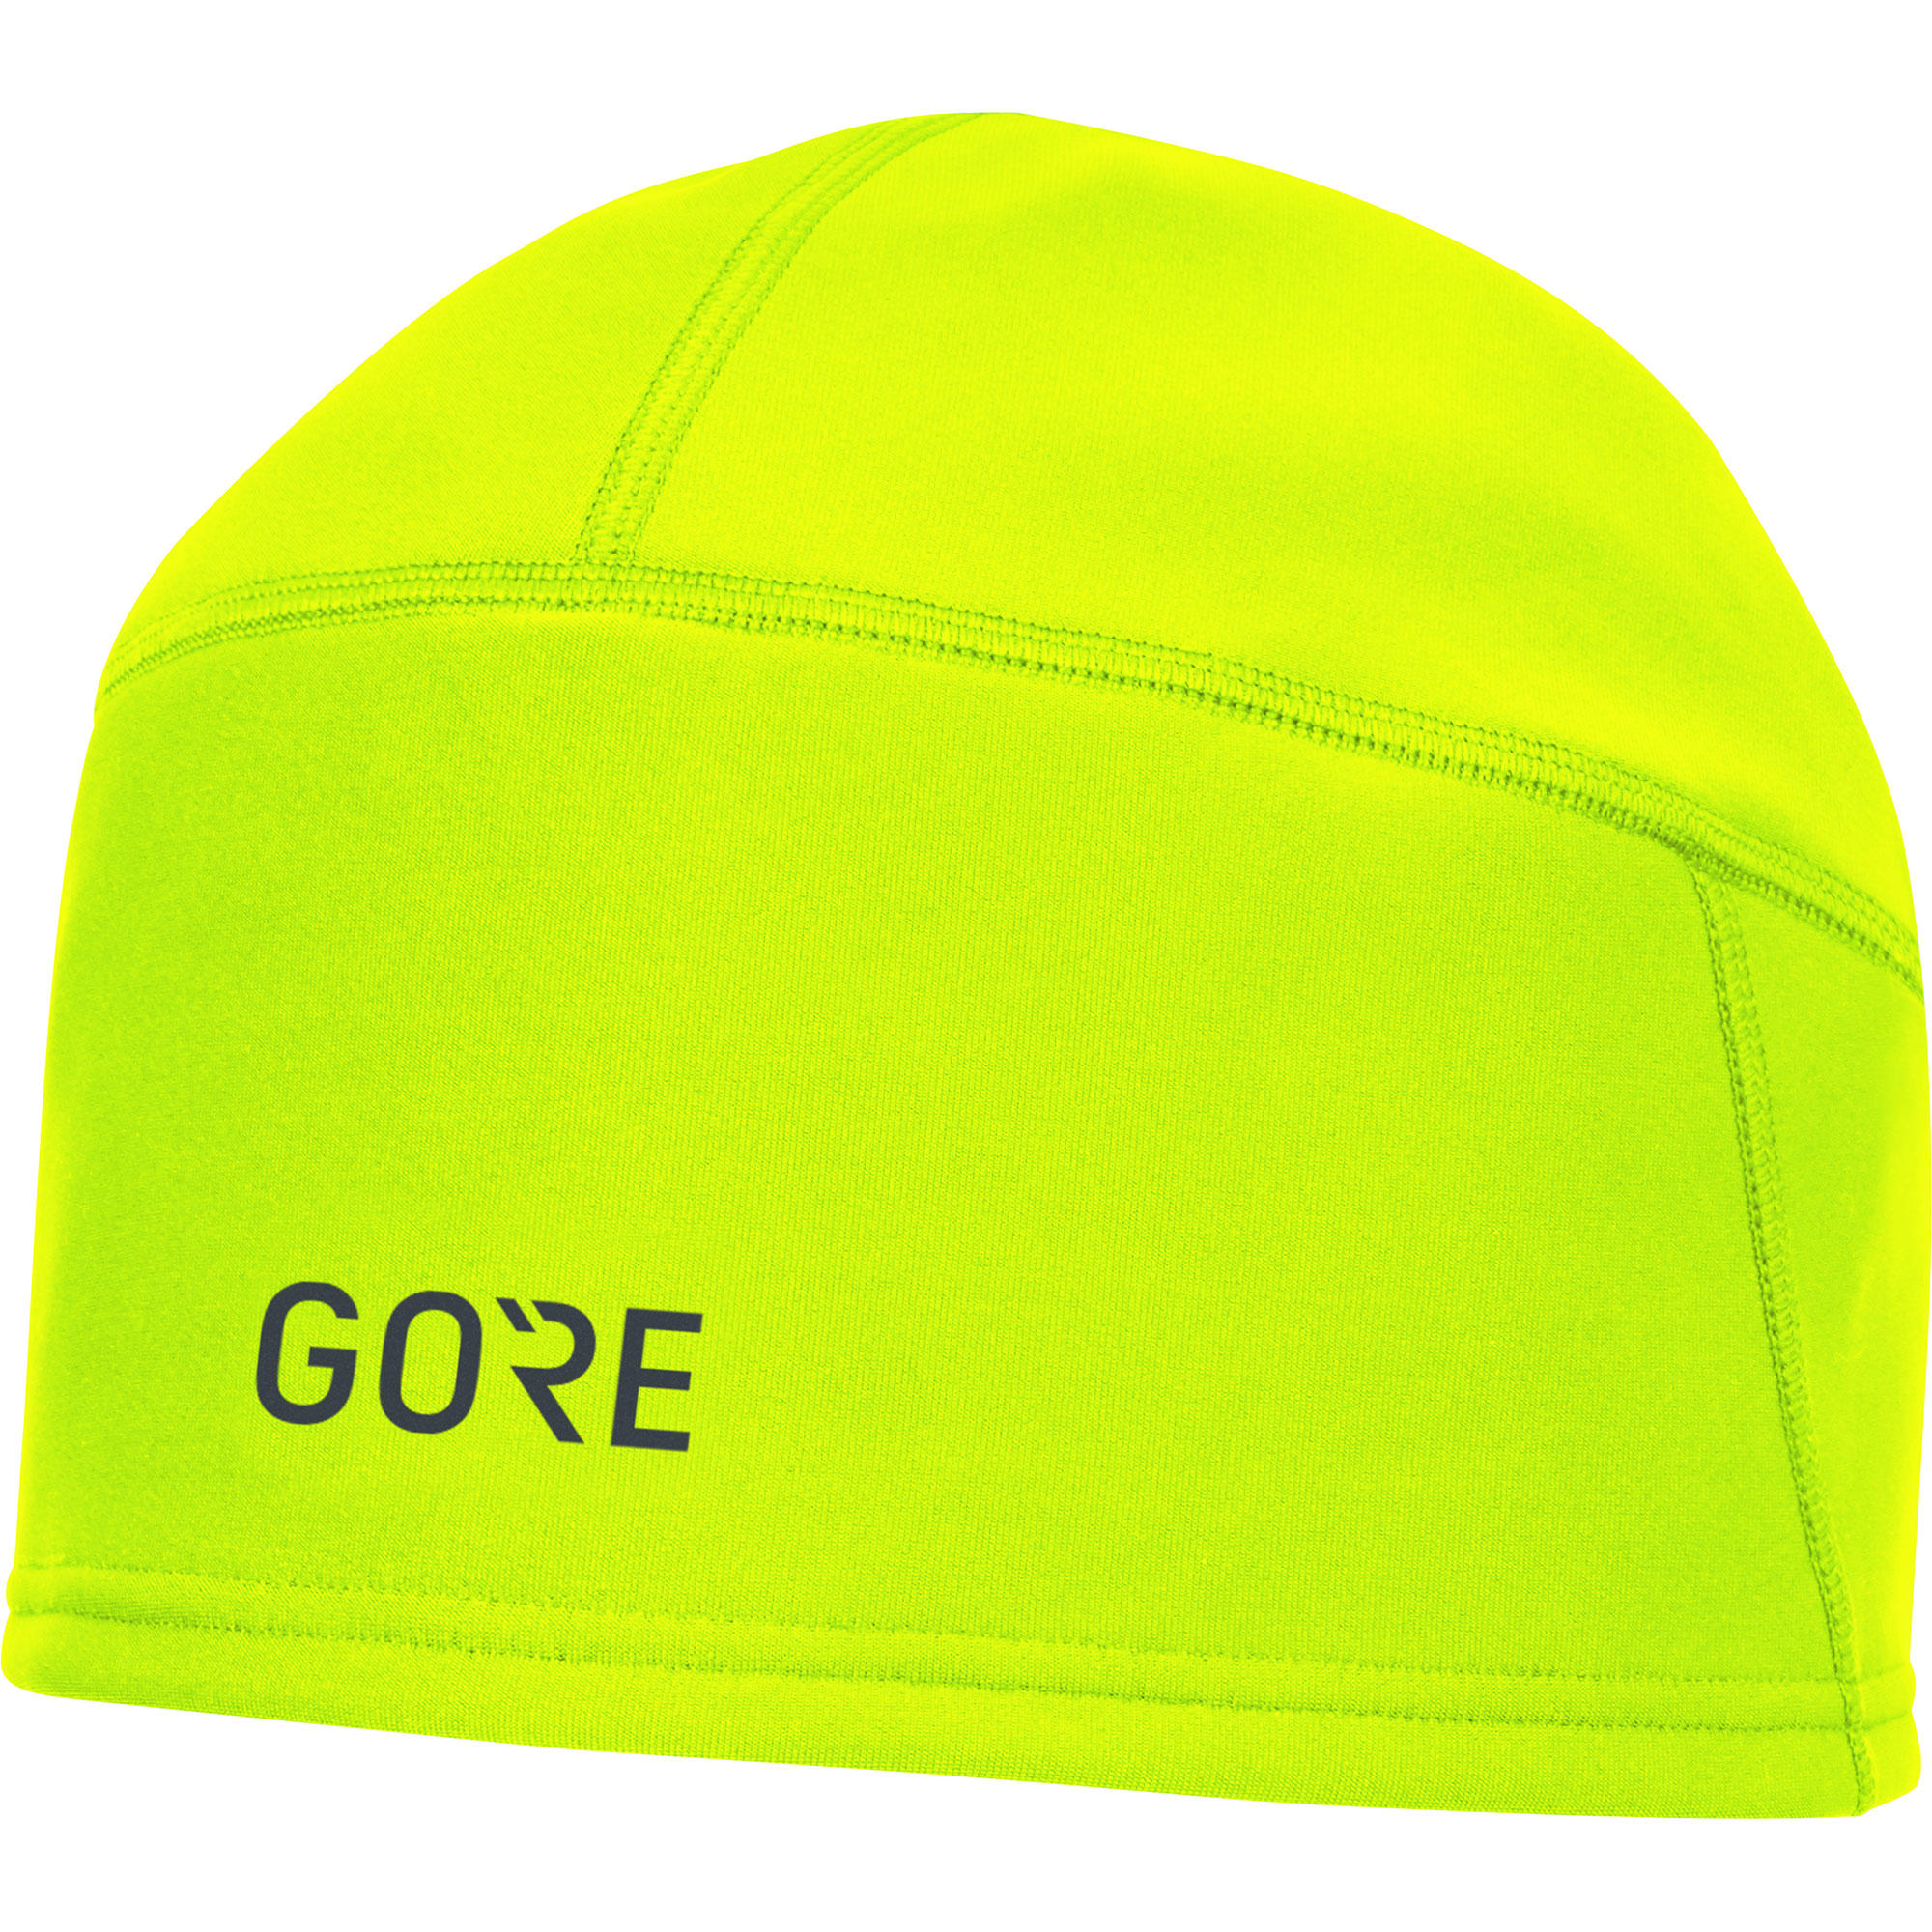 Gore Wear Gore Windstopper Beanie - Gorro